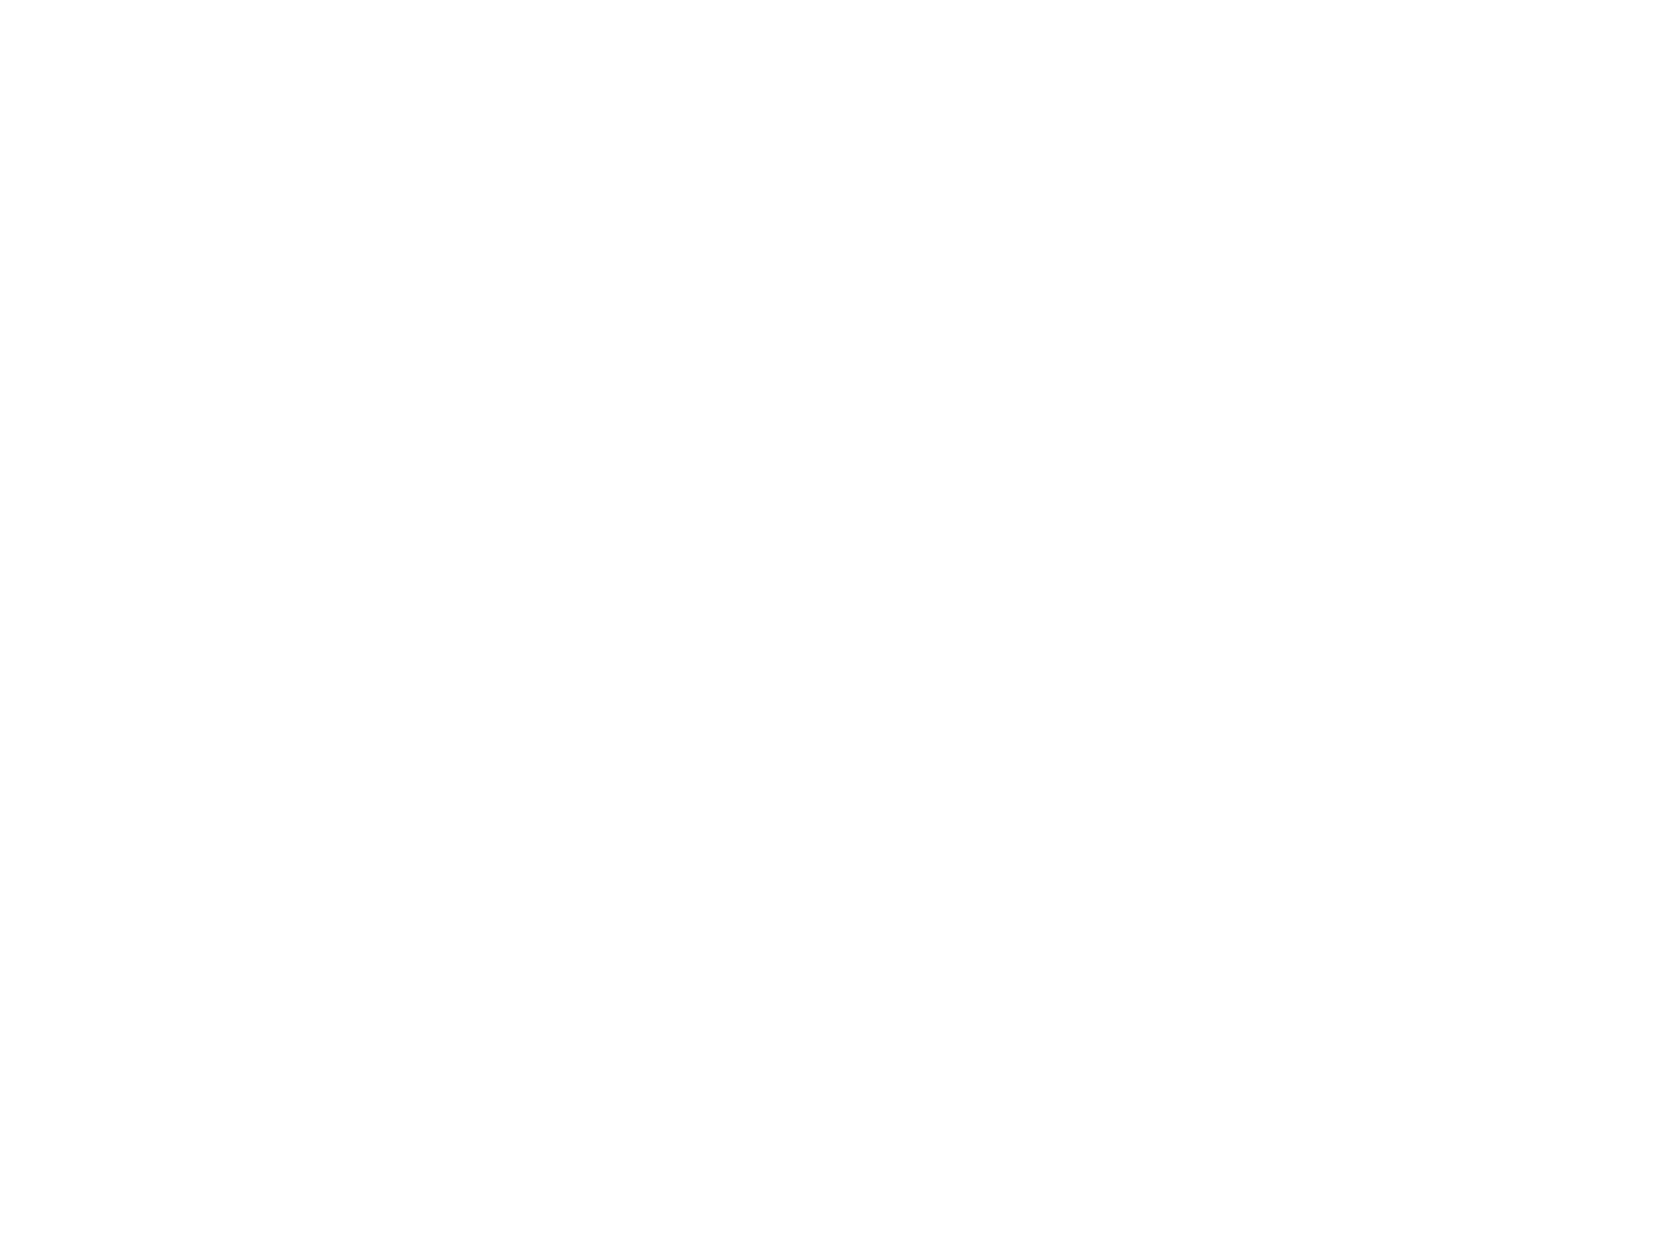 Building-columns-solid-icon